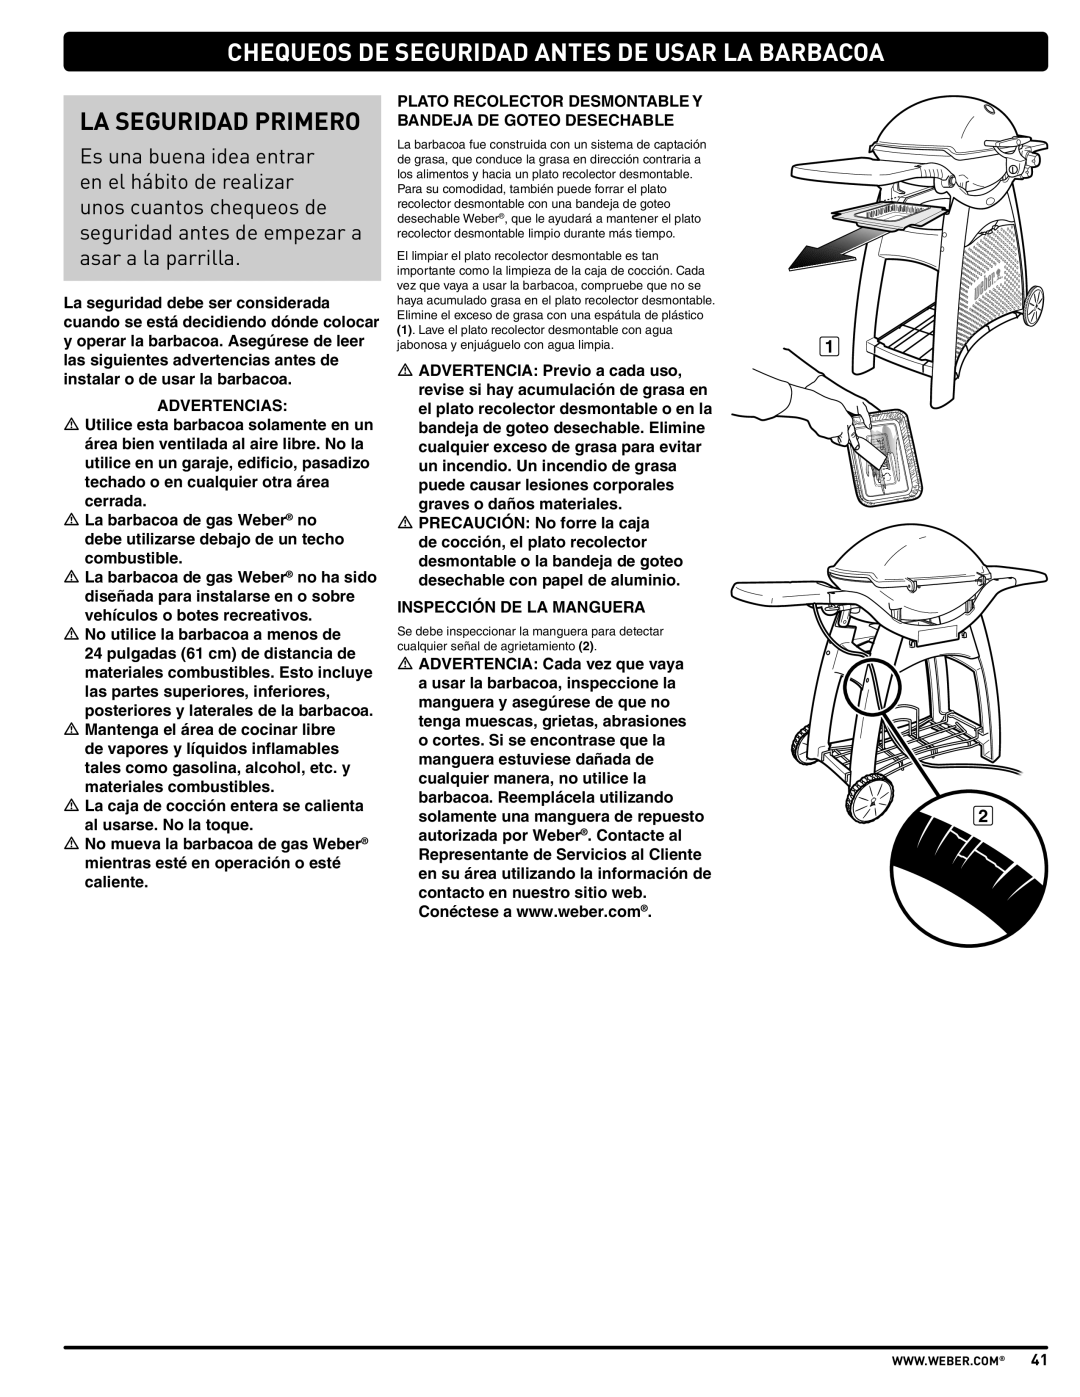 Weber 57515 manual Chequeos De Seguridad Antes De Usar La Barbacoa, La Seguridad Primero 